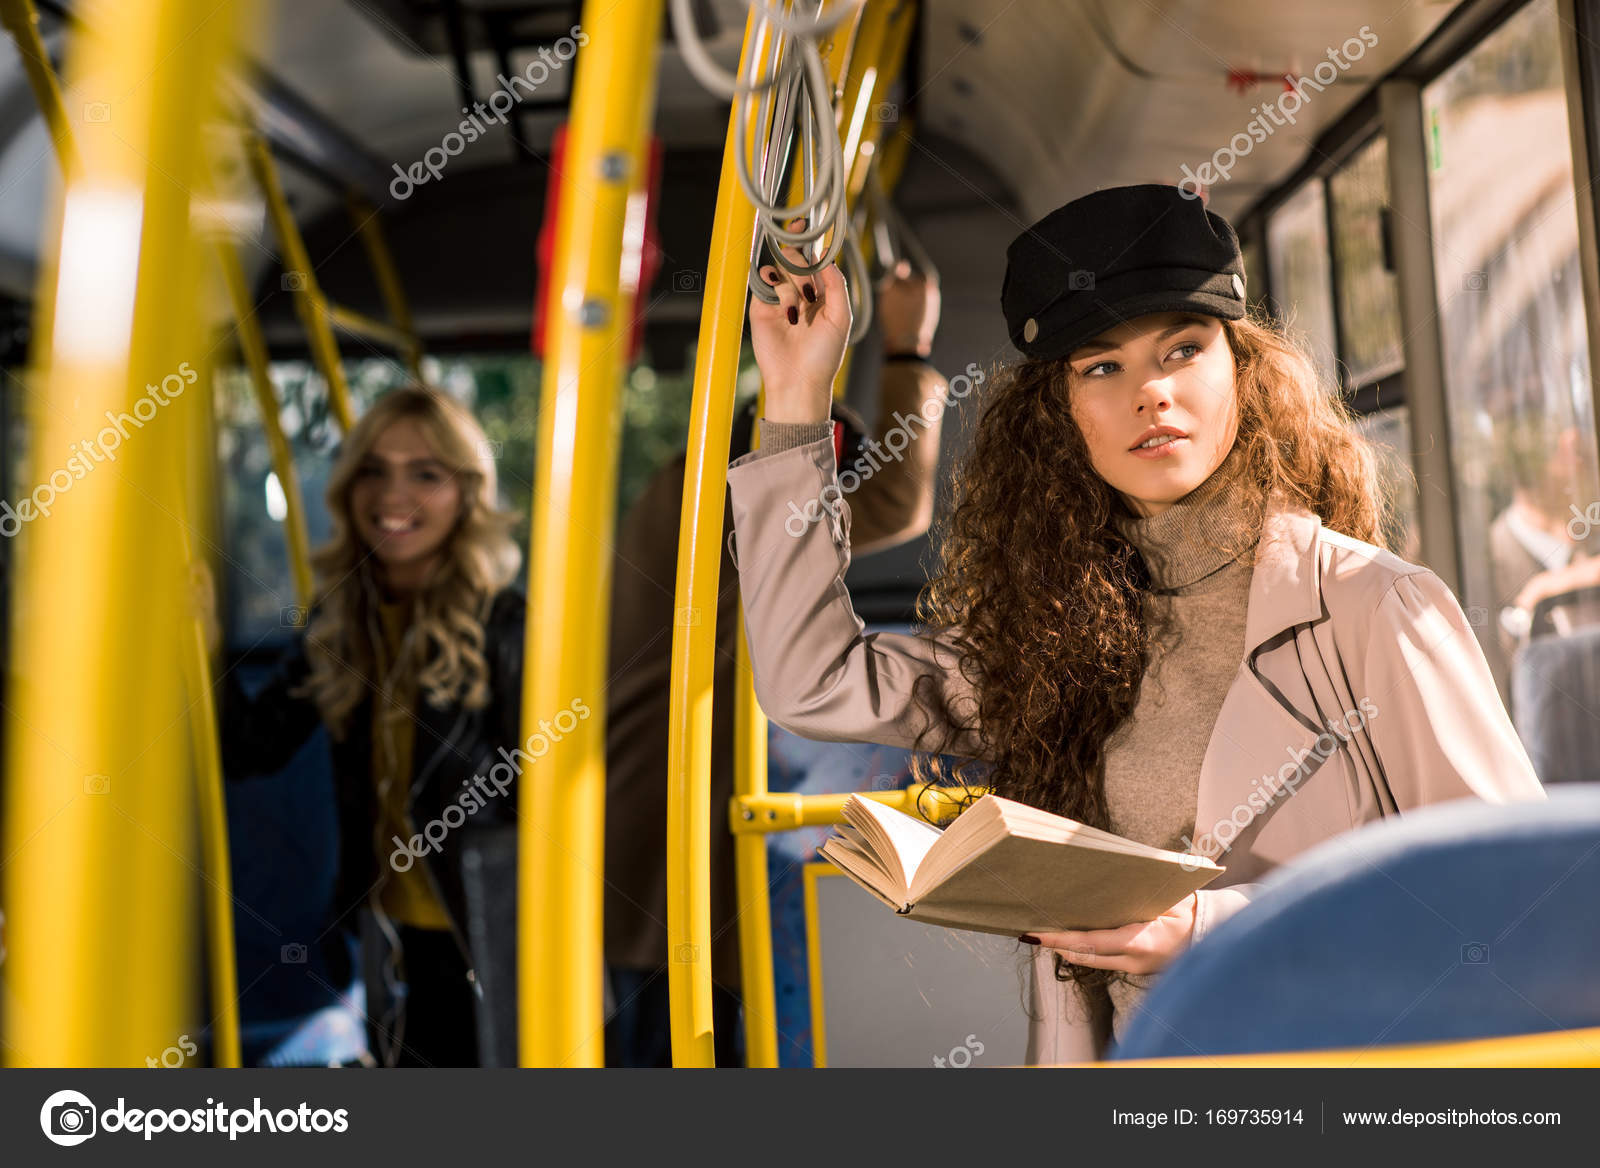 Как Познакомиться С Девушкой В Автобусе